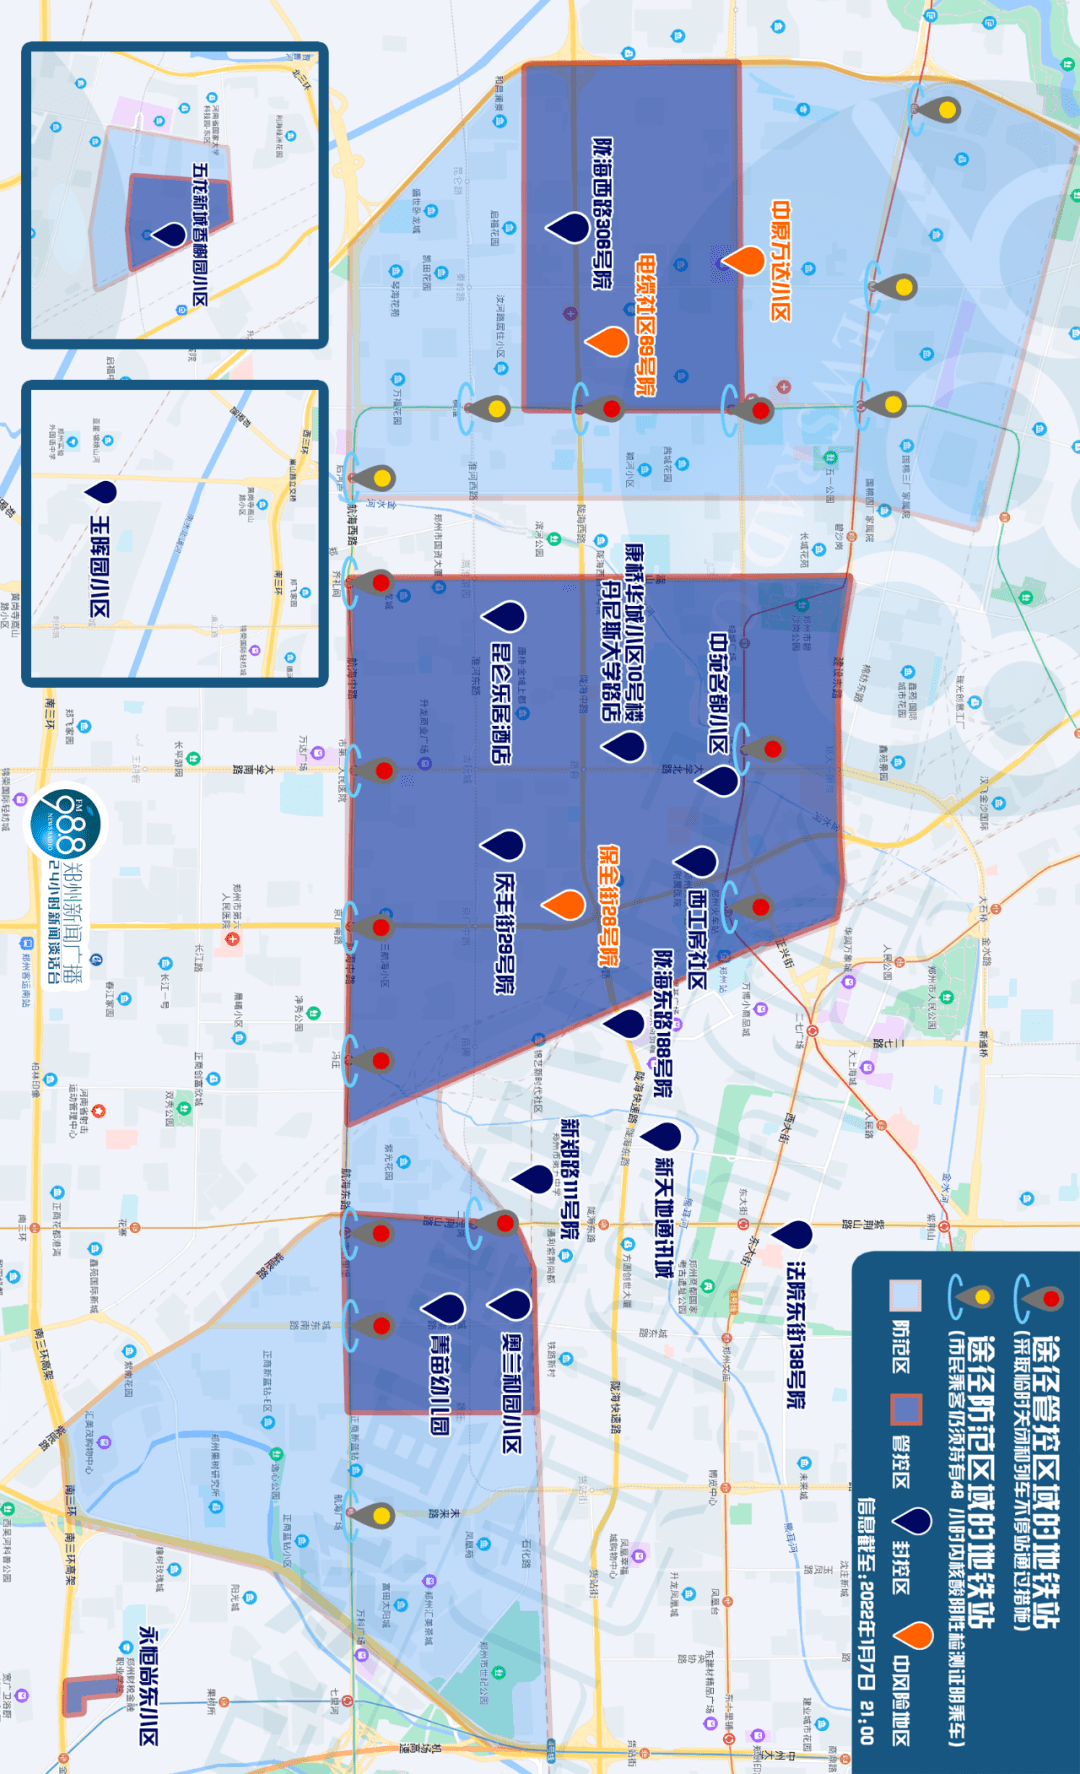 郑州市风险地区地图图片